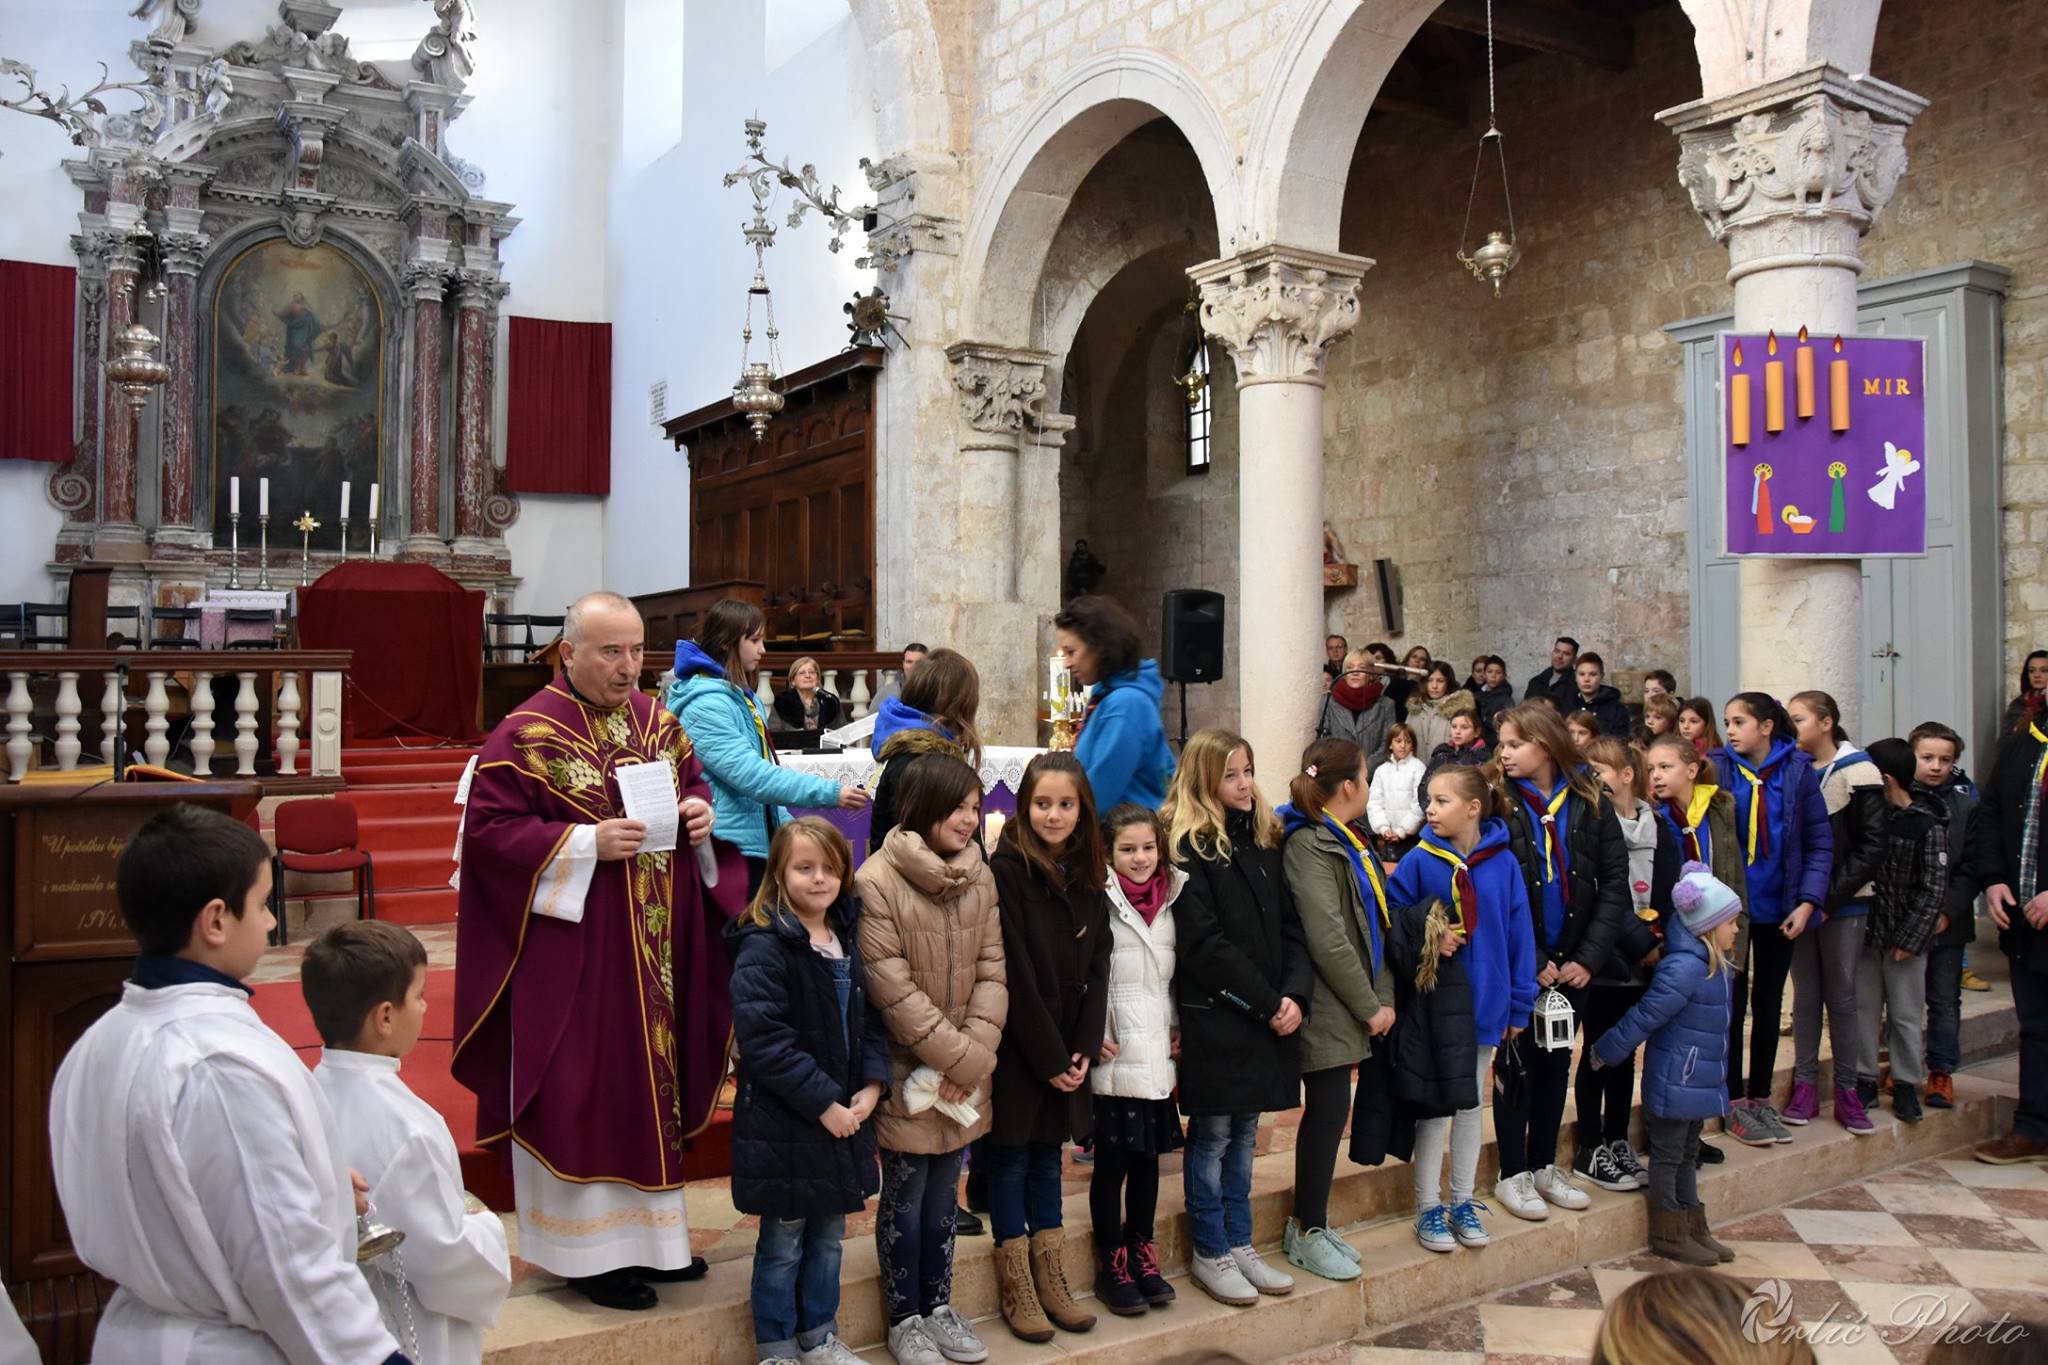 "Božićni obiteljski susret uz riječ i glazbu" i Betlehemsko svijetlo u Pagu